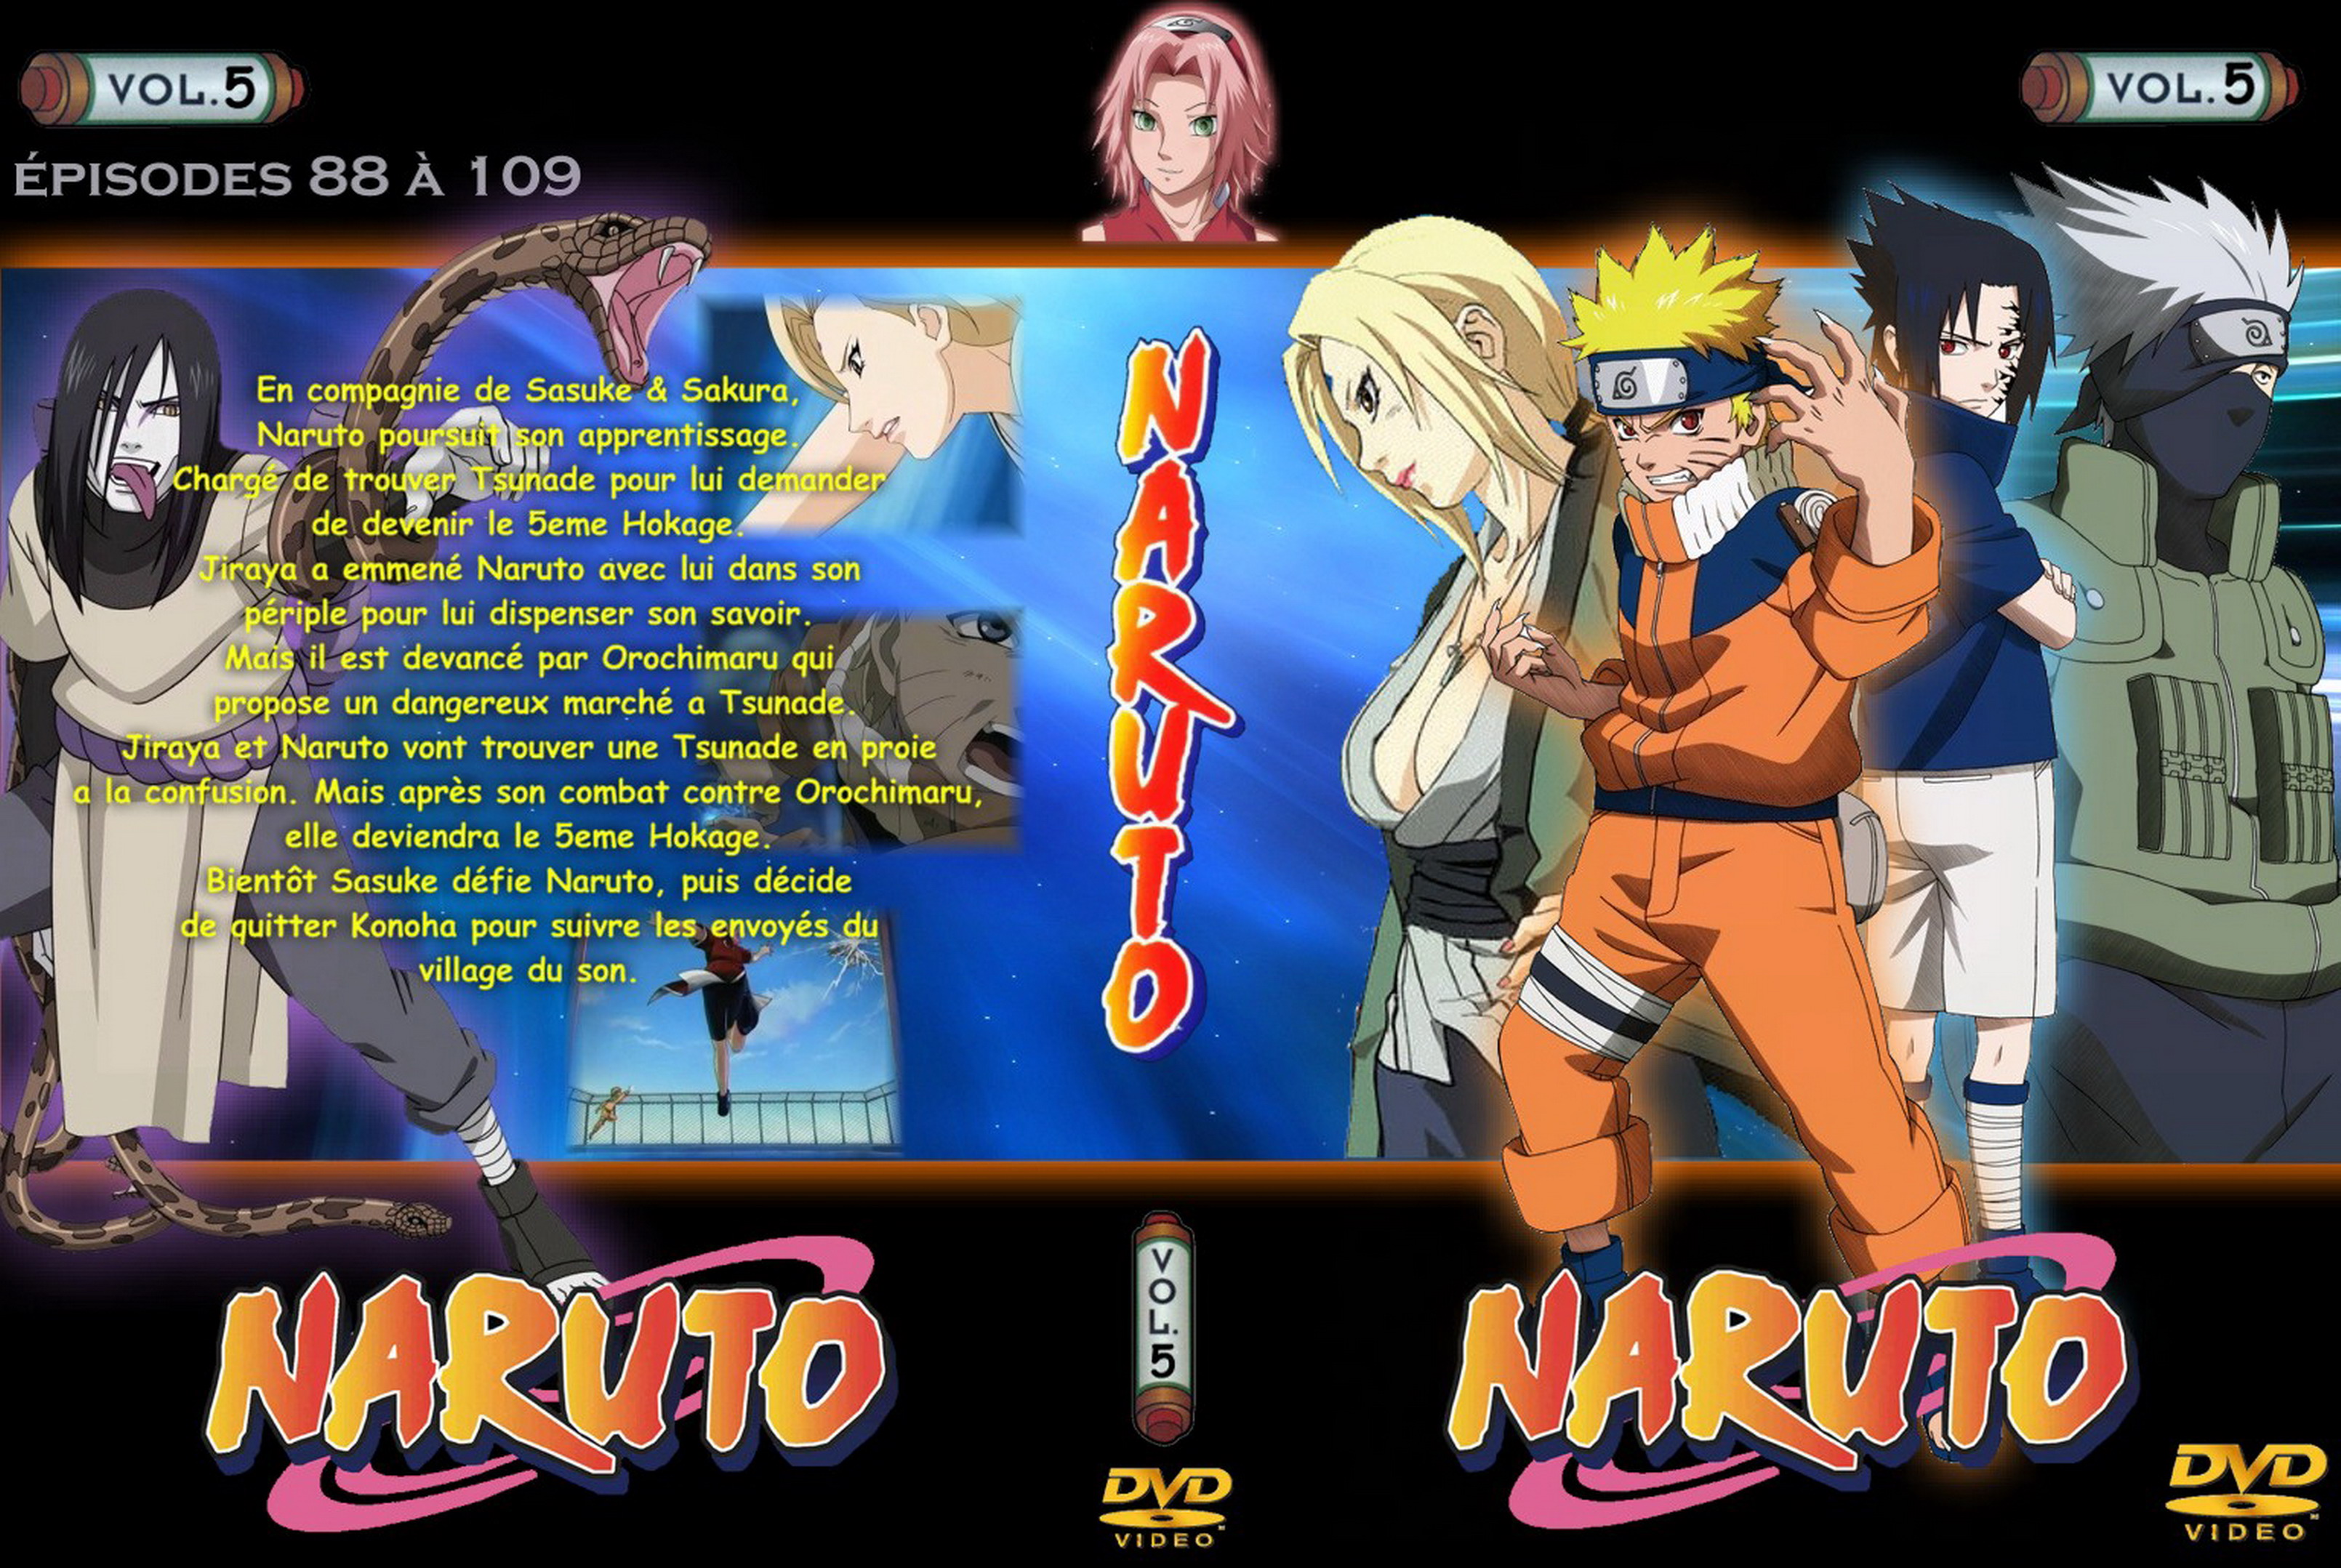 Jaquette DVD Naruto vol 05 v2